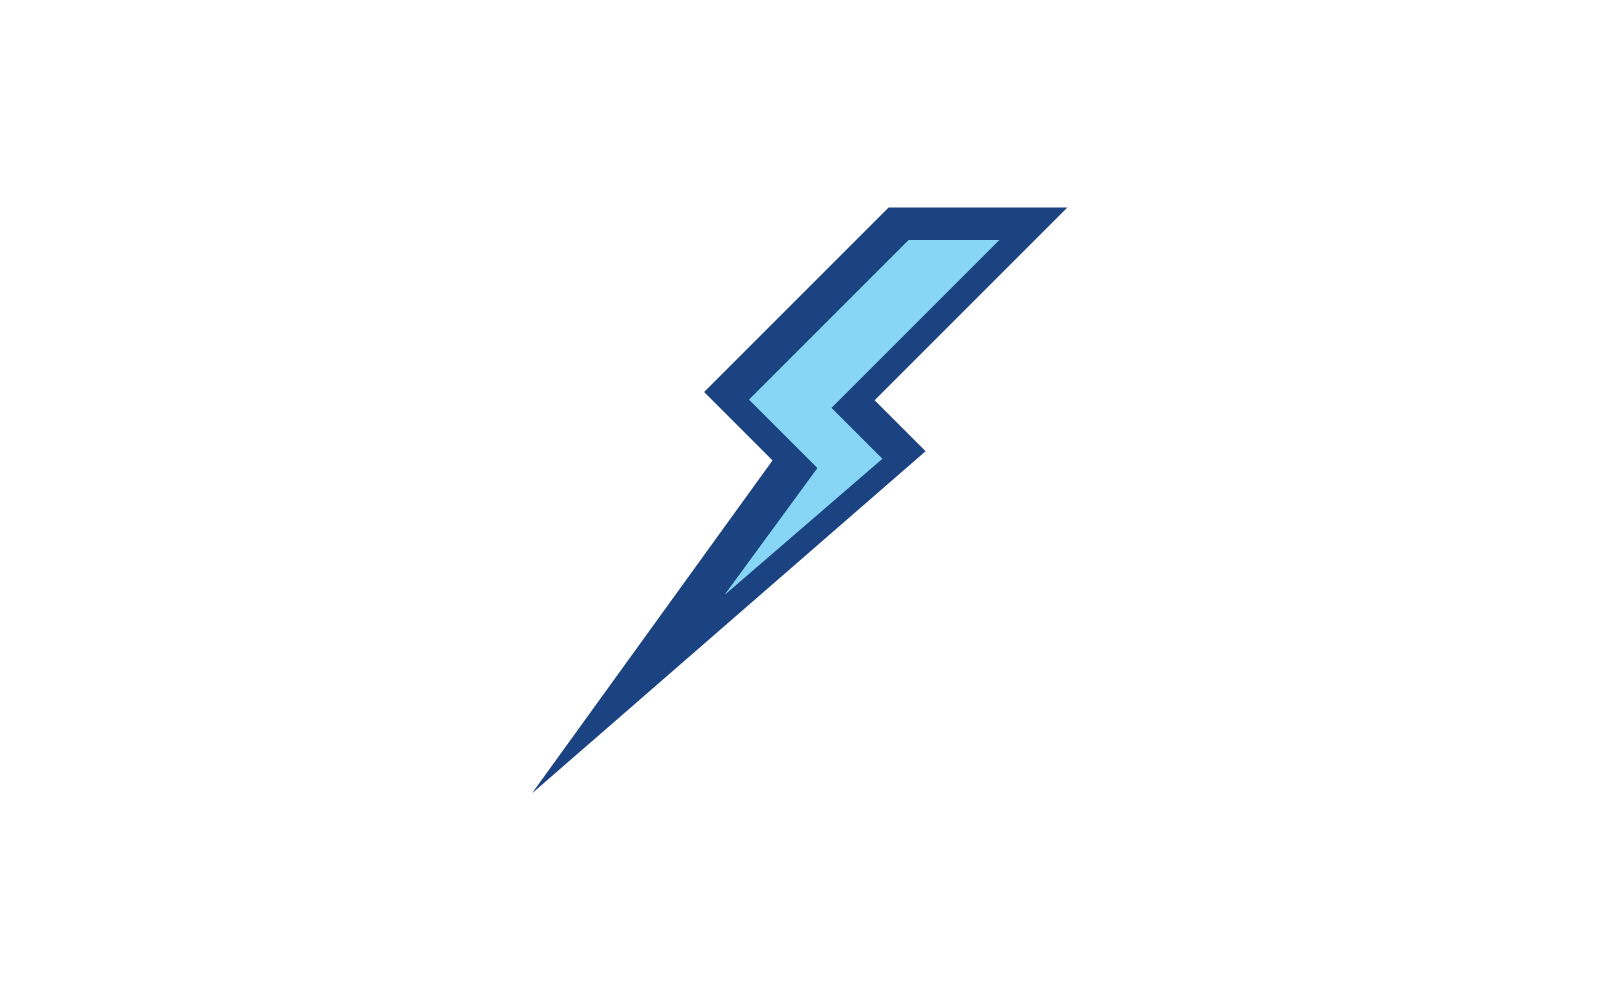 Power lightning power energy logo illustration icon vector Logo Template